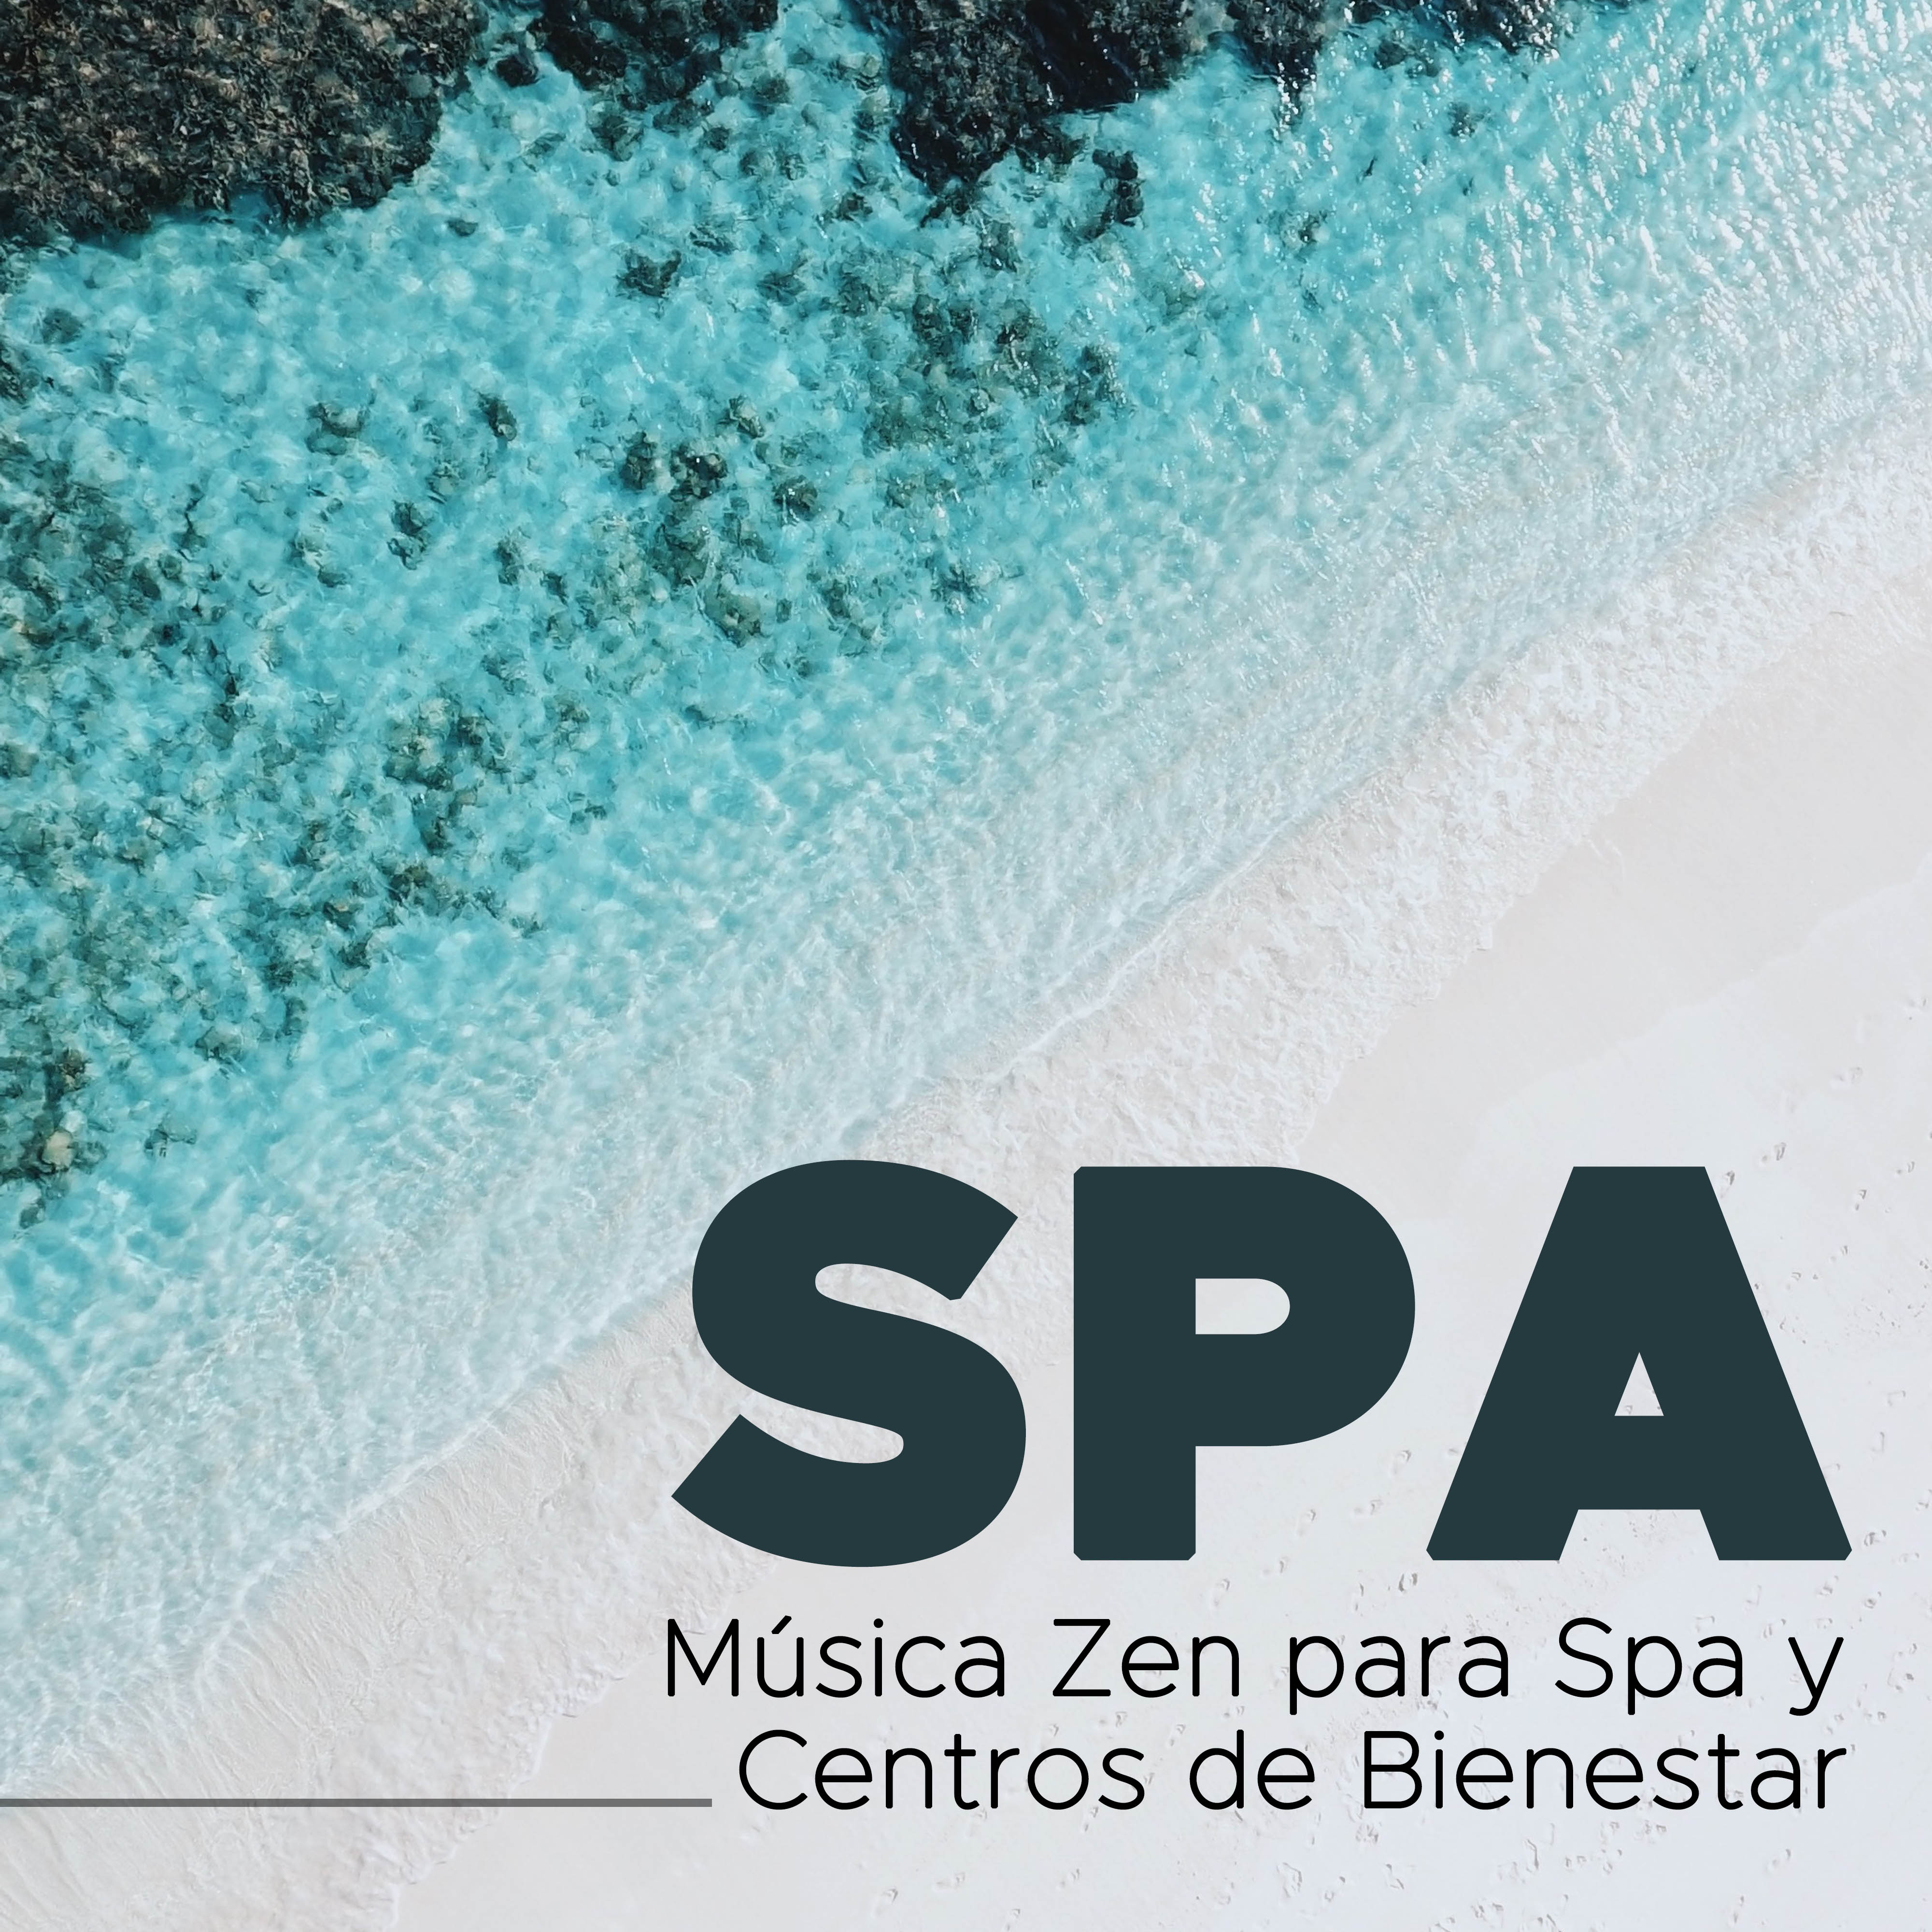 Spa - Musica Zen para Spa y Centros de Bienestar